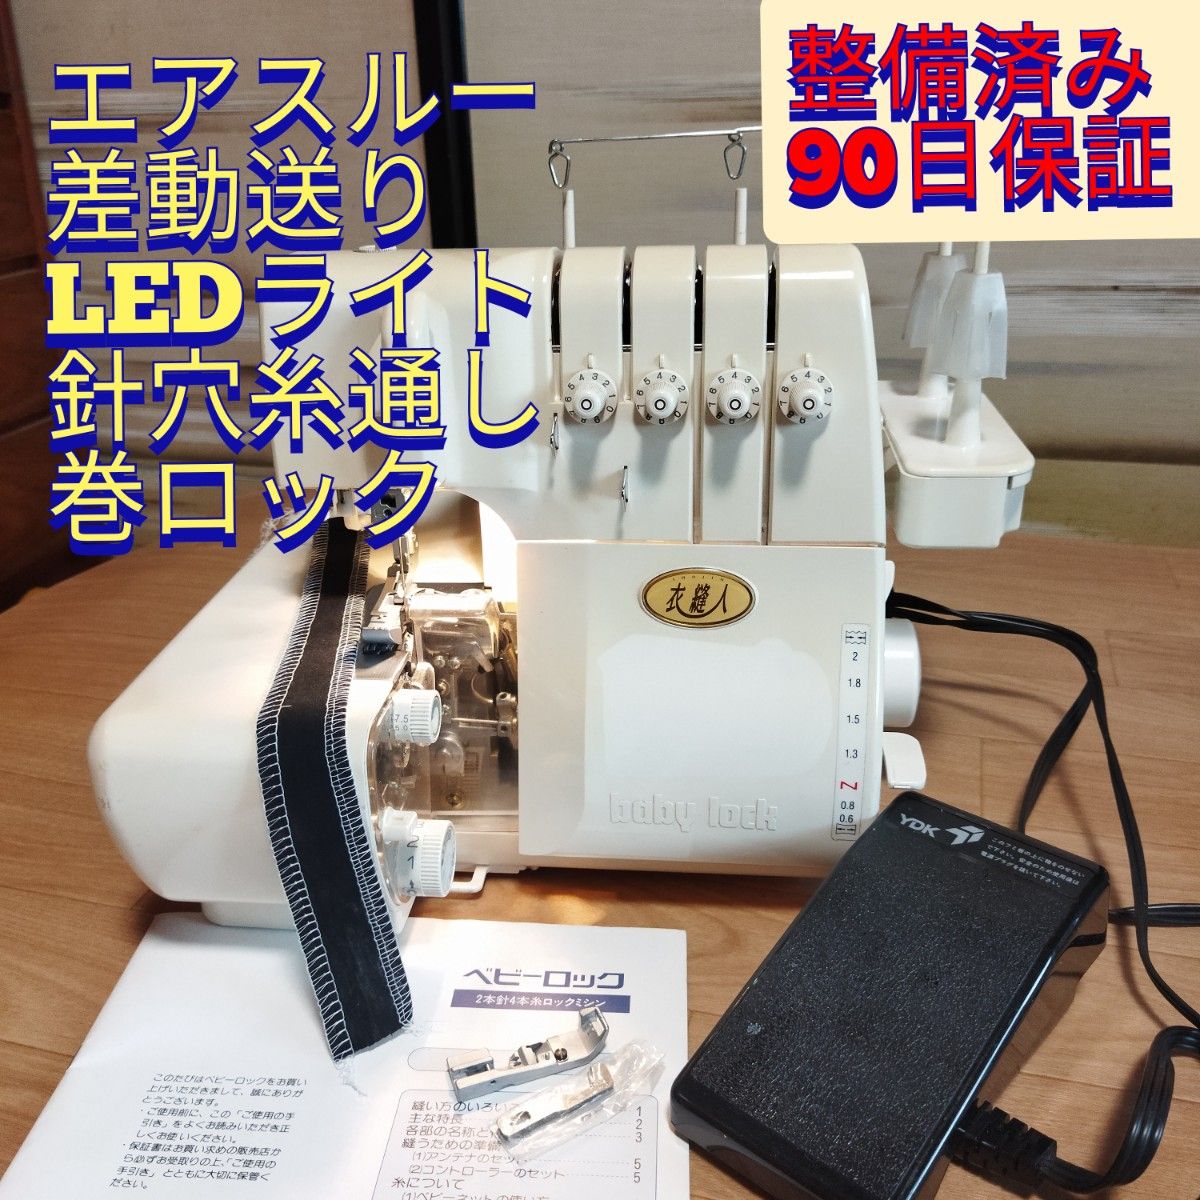 整備済保証付 衣縫人 エアスルー 差動送 LED照明 2本針4本糸 ロックミシン